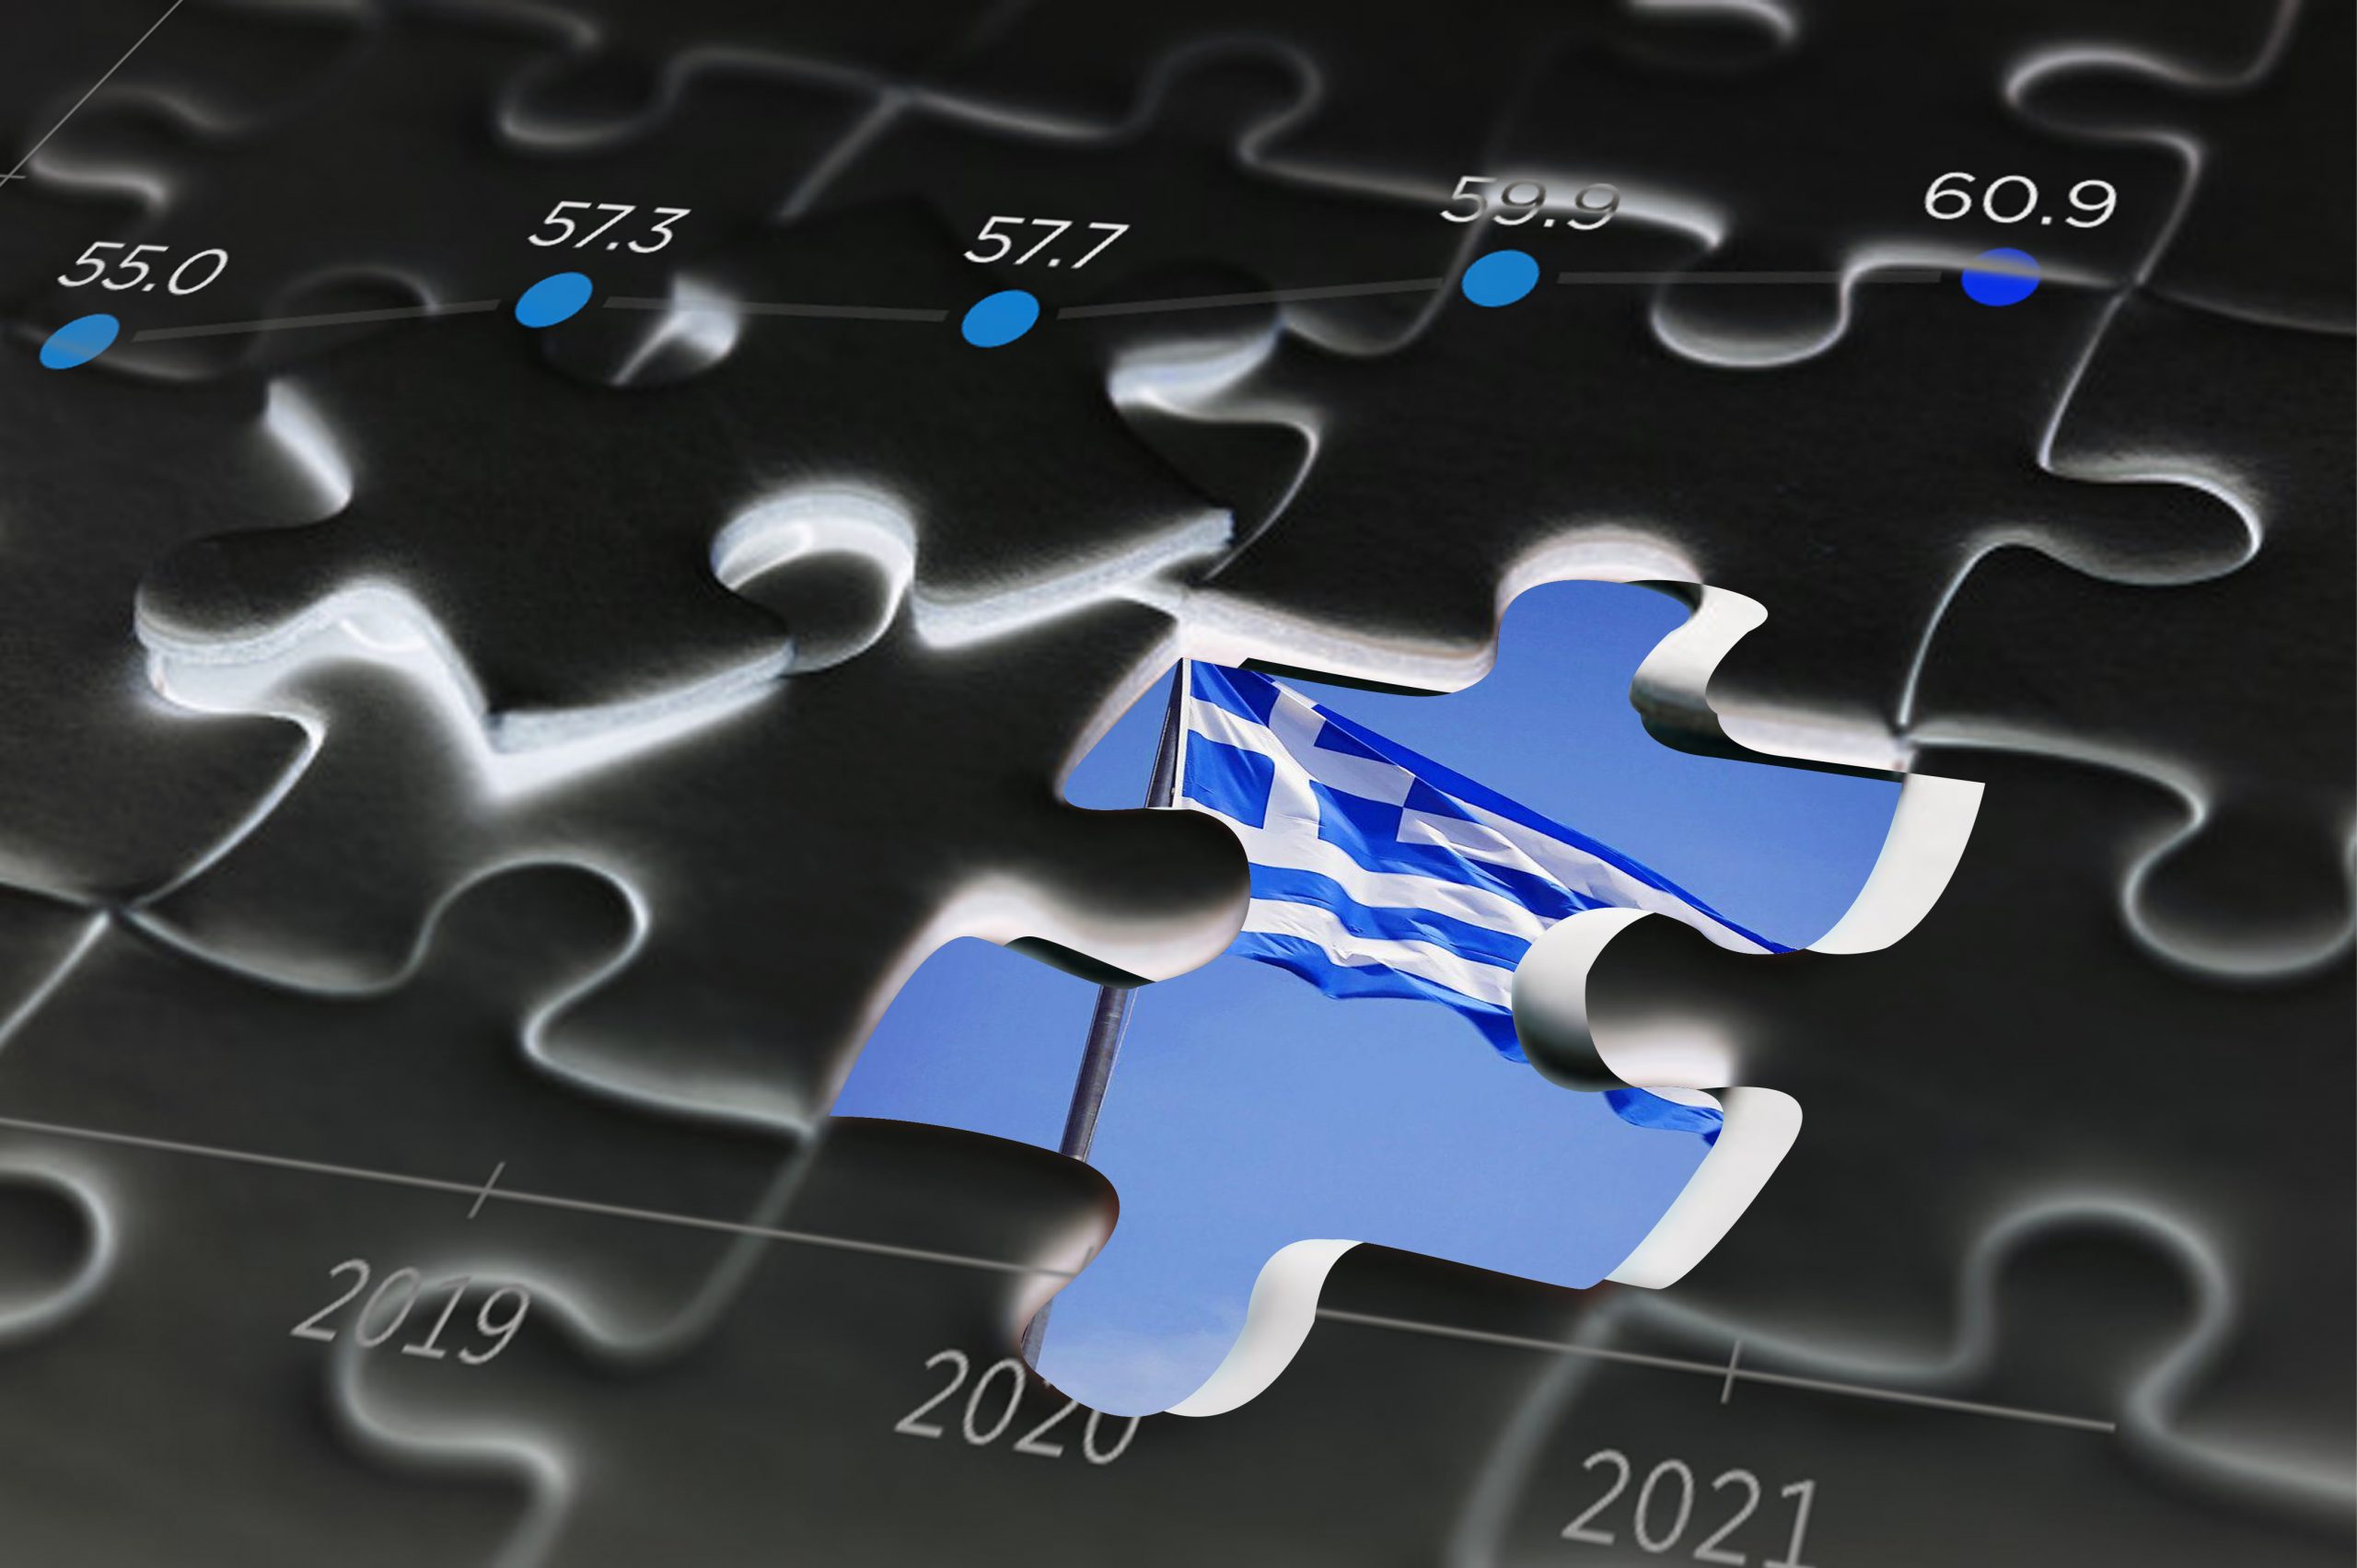 Δείκτης Ανάκαμψης : Το οικονομικό κλίμα  στην Ελλάδα βελτιώνεται αν και η ανακάμψη επιδεινώνεται